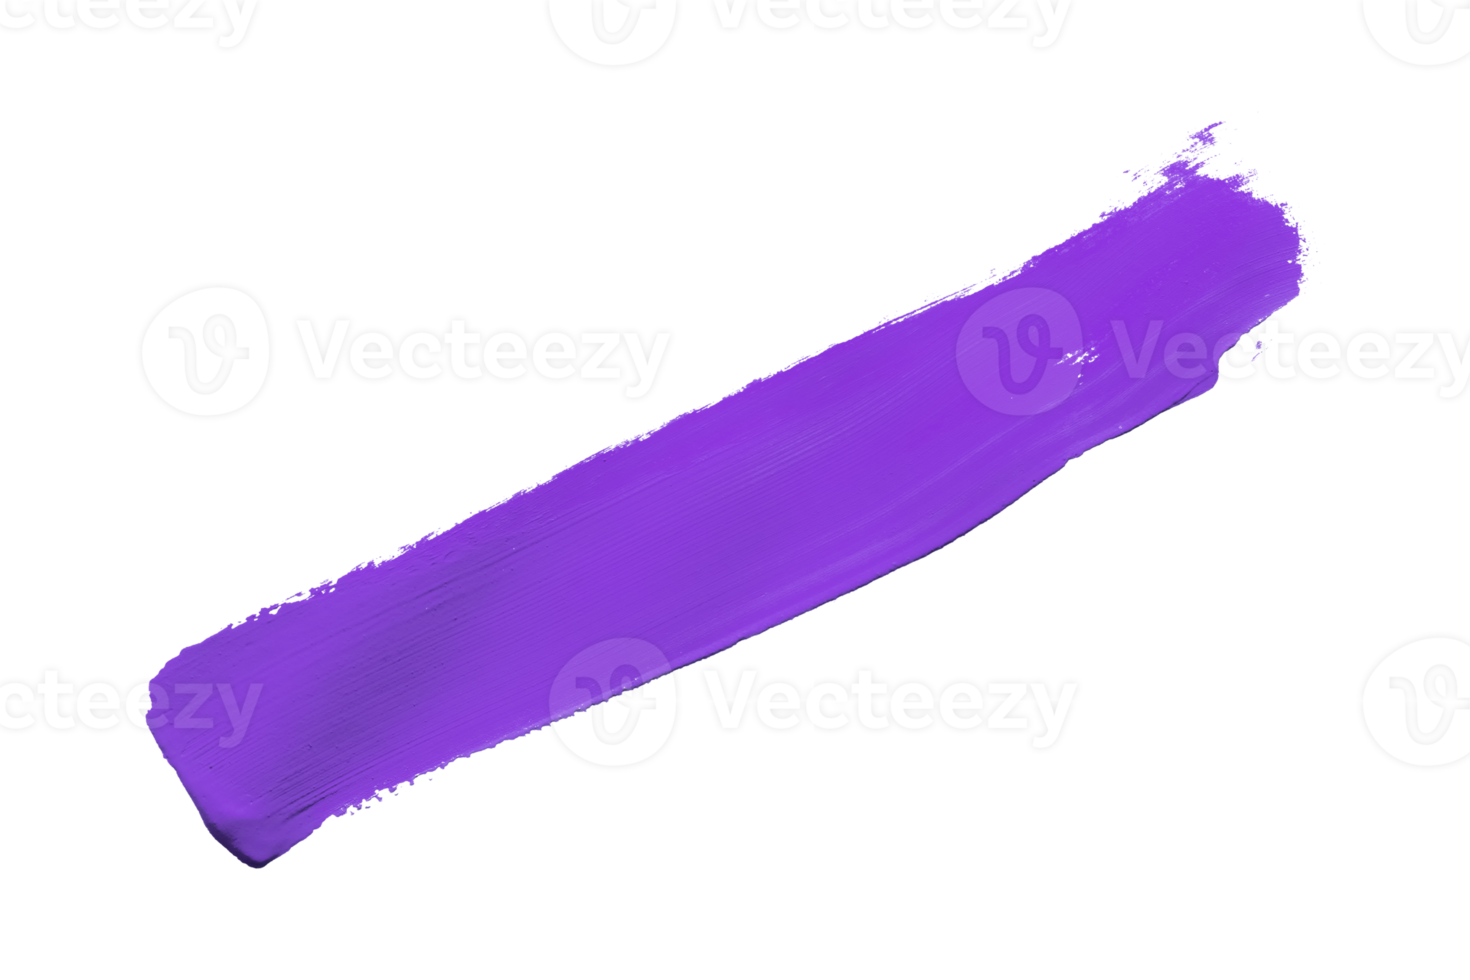 viola spazzola isolato su trasparente sfondo viola acquerello, png